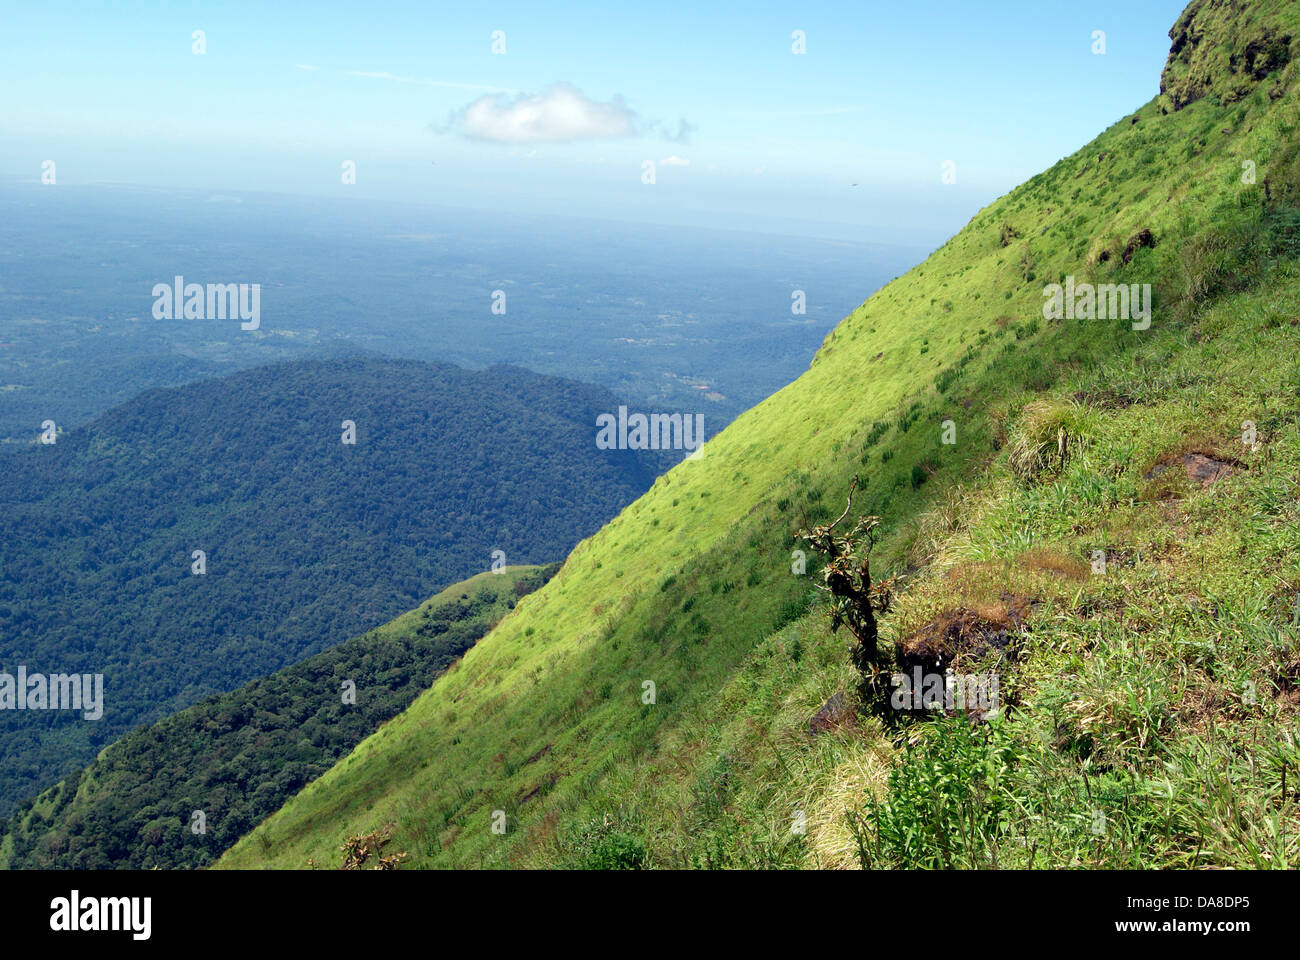 Westghats tiefen Abhang Täler und Berge im Süden Indien Karnataka State Scenerio Querformat Stockfoto